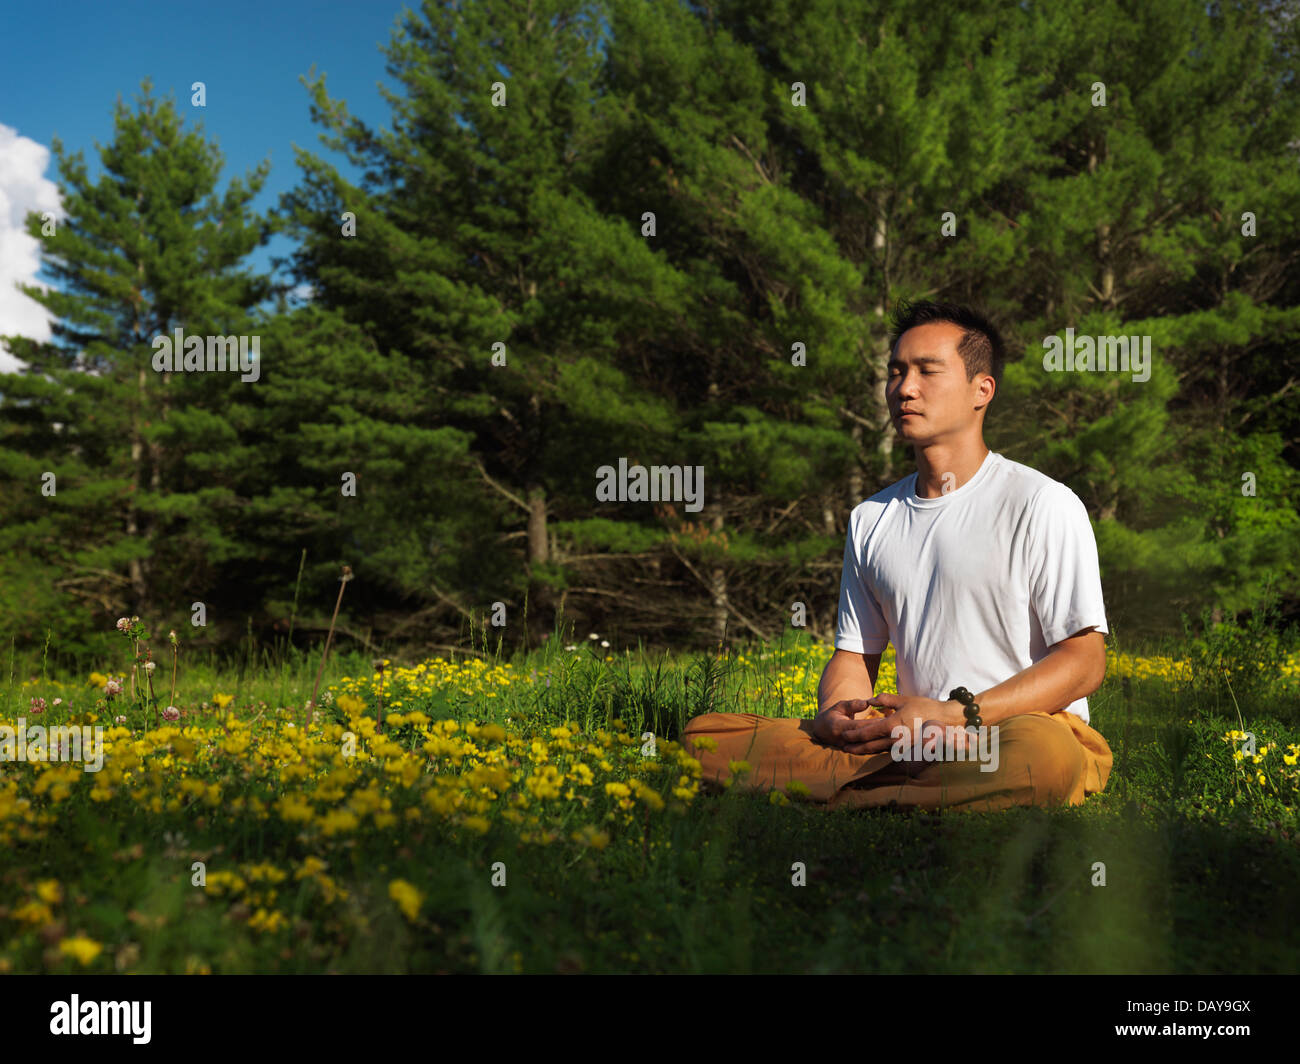 Lizenz verfügbar unter MaximImages.com - Shaolin-Meister meditiert im Freien während Sonnenaufgang in der Natur, sitzt mit gekreuzten Beinen Stockfoto